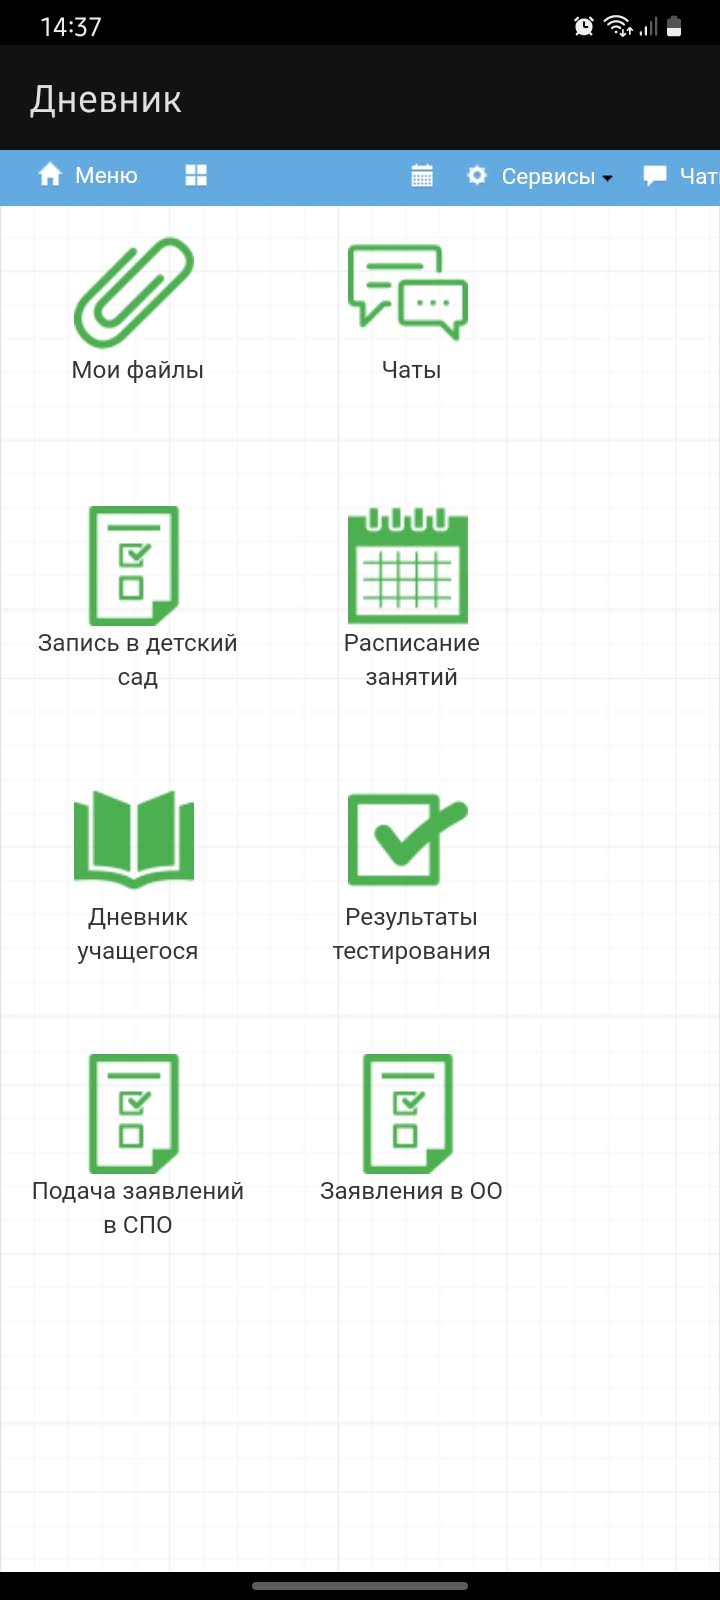 Дневник – Скачать Приложение Для Android – Каталог RuStore